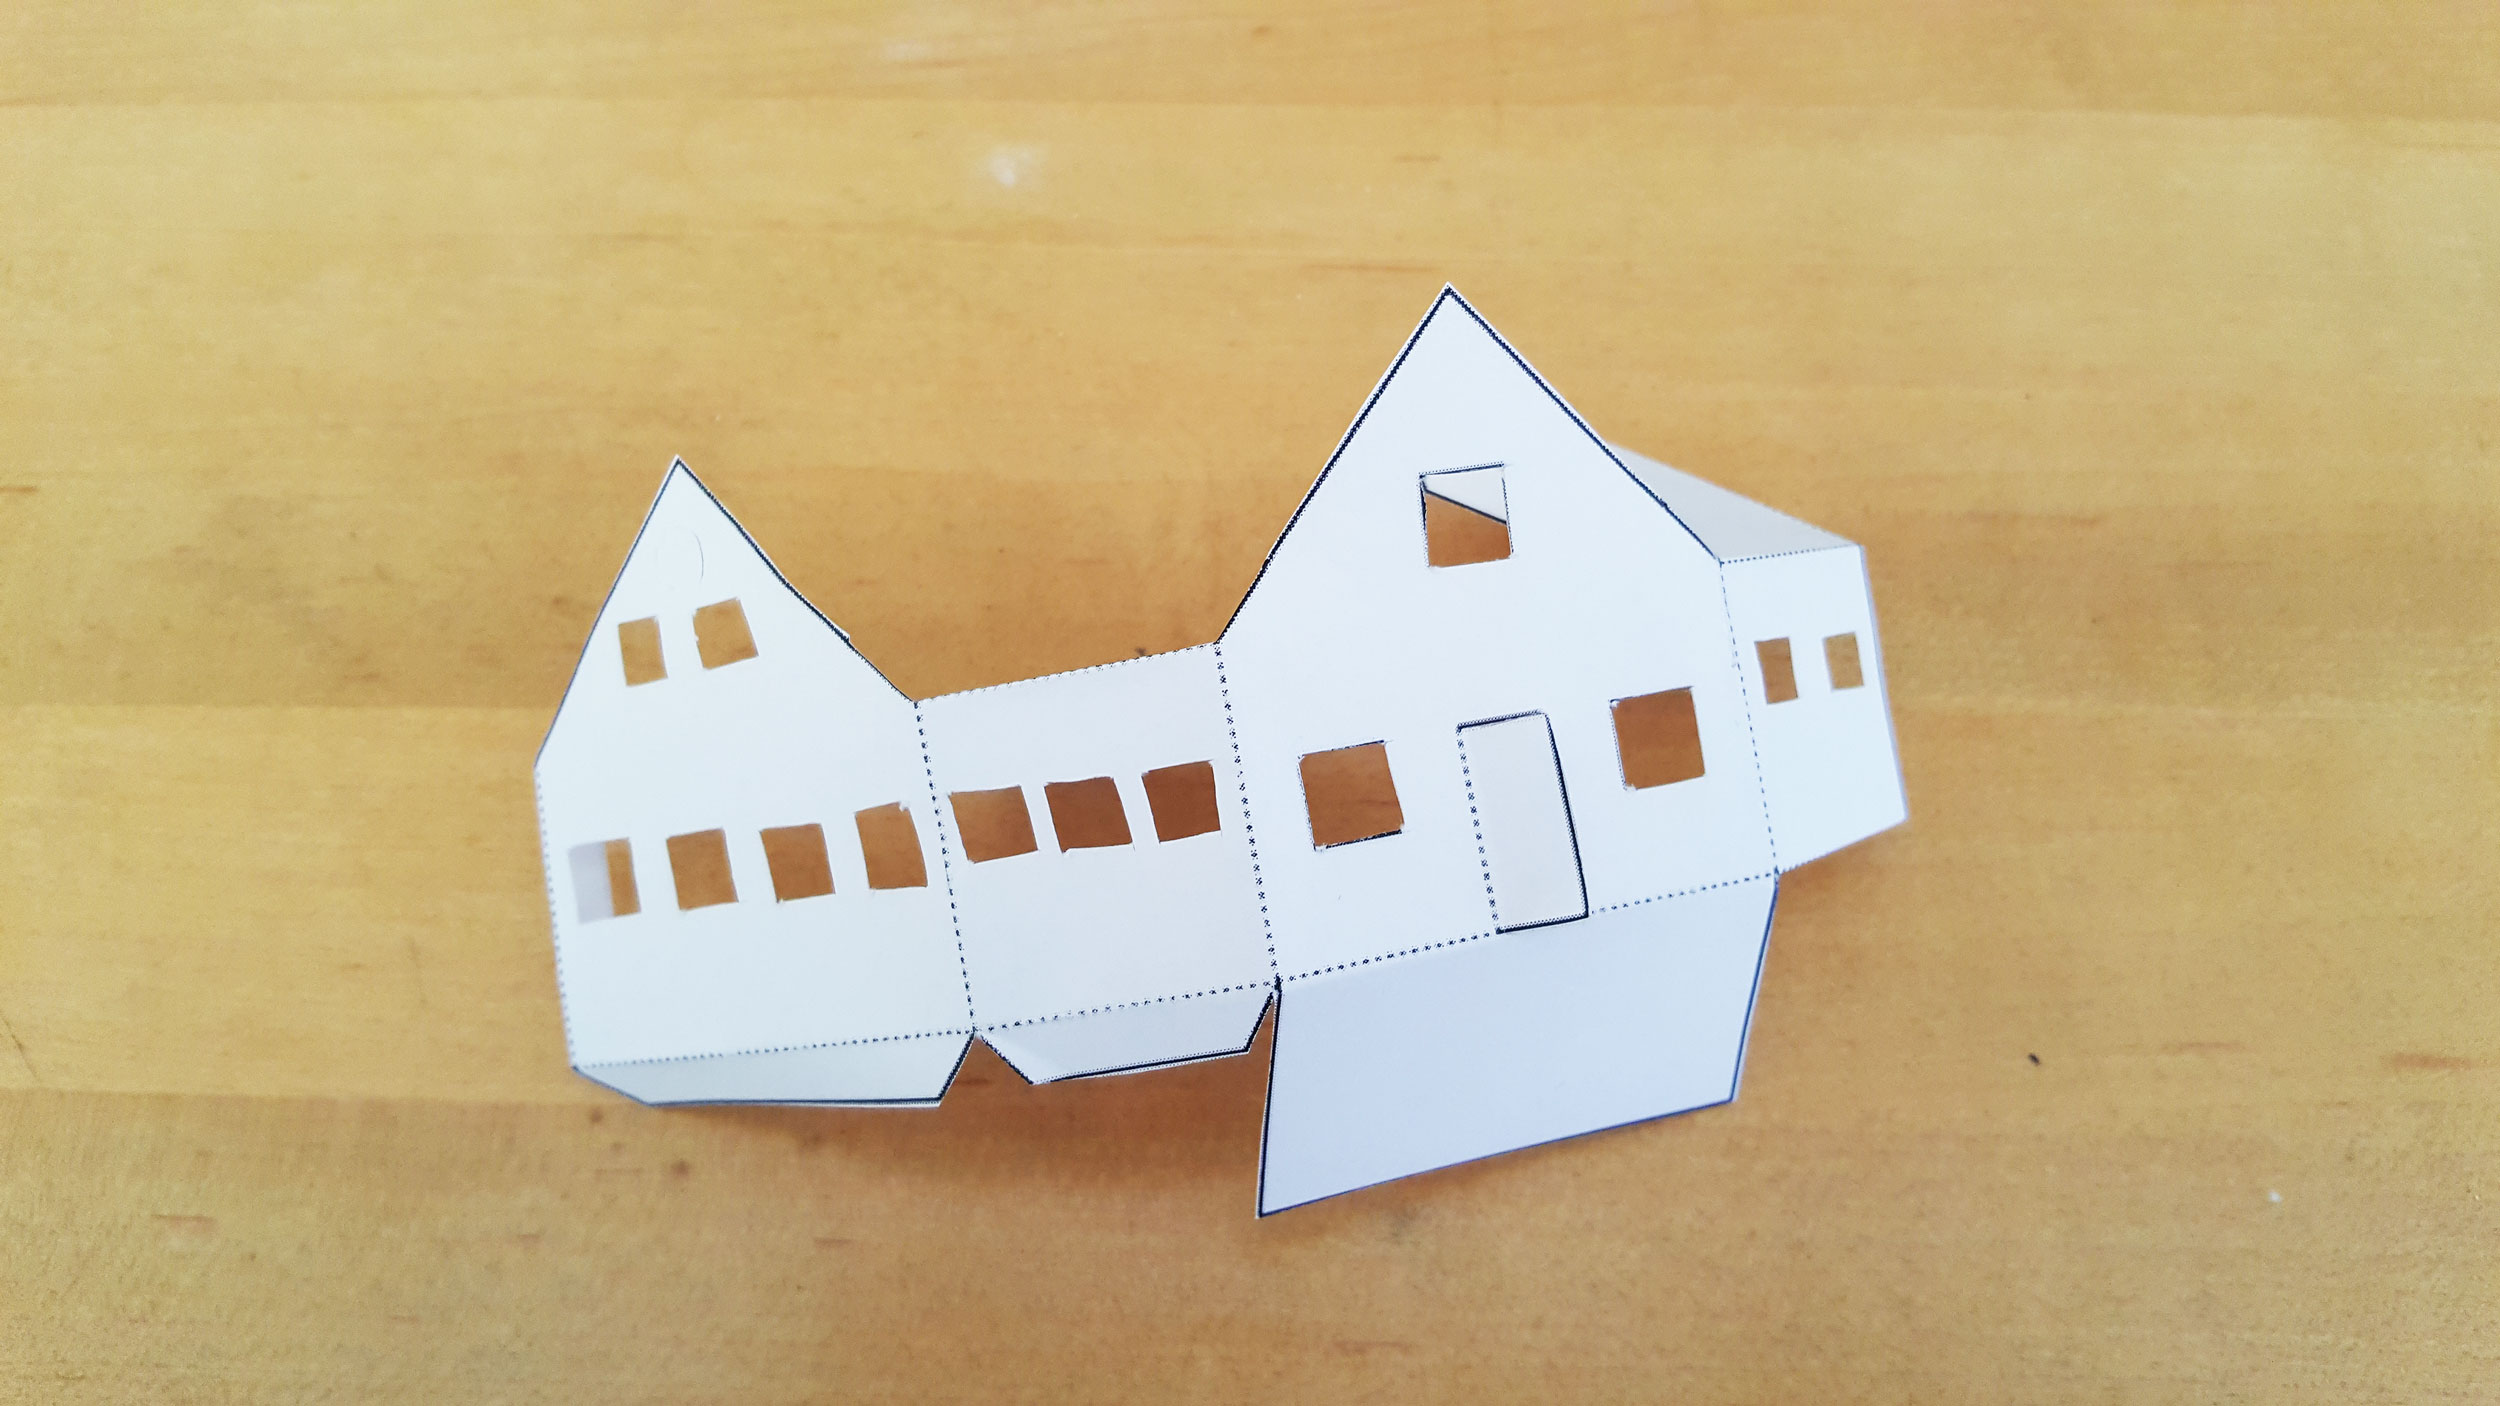 Folding Paper House Ornament | OrnamentShop.com